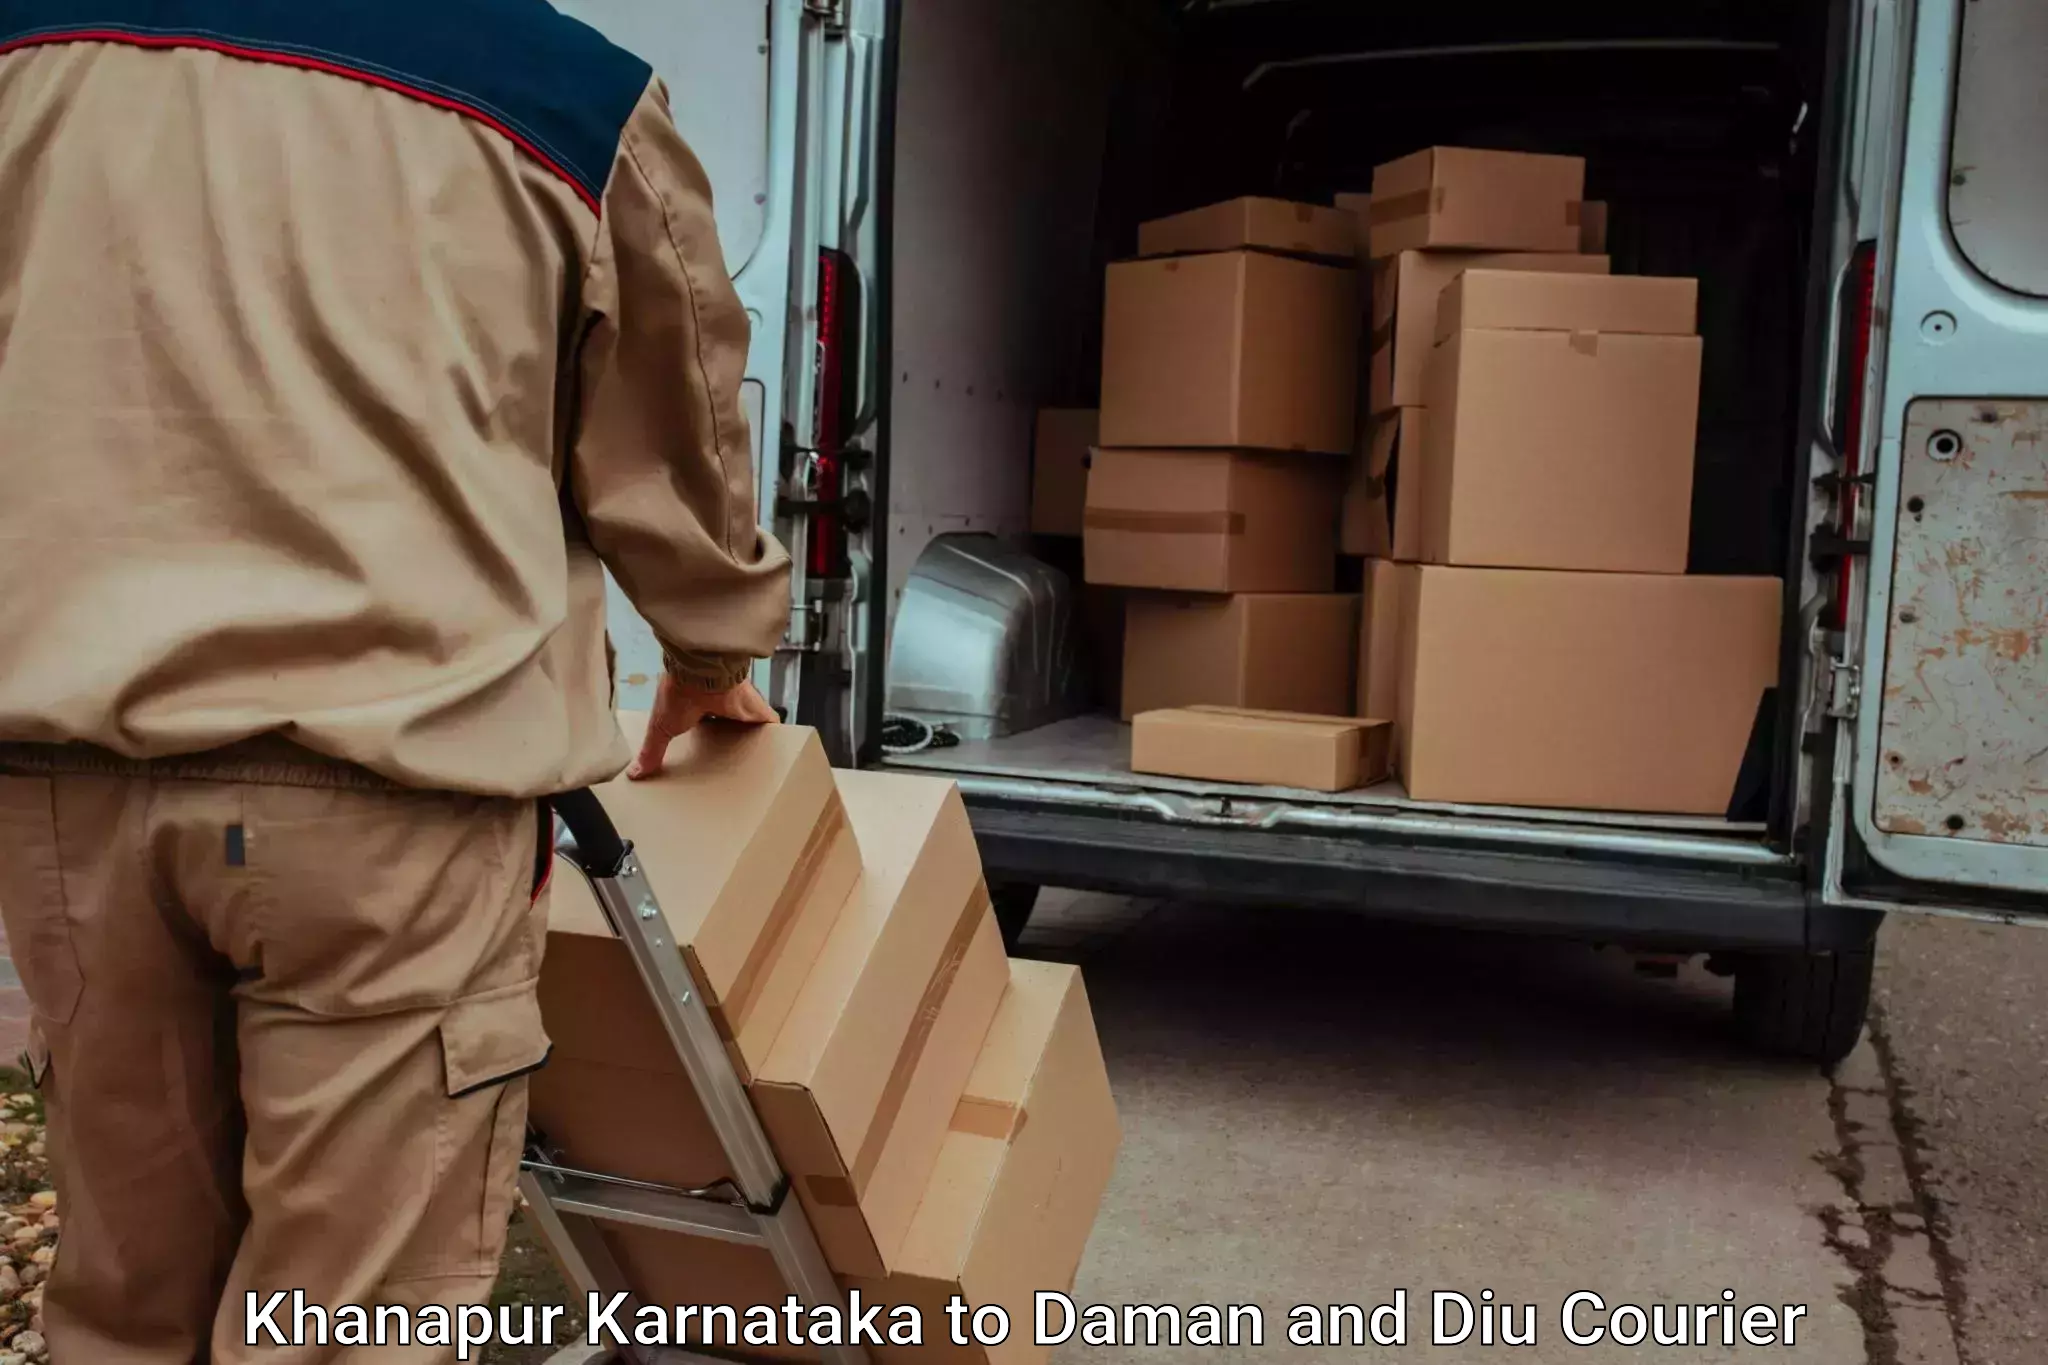 Furniture transport company Khanapur Karnataka to Daman